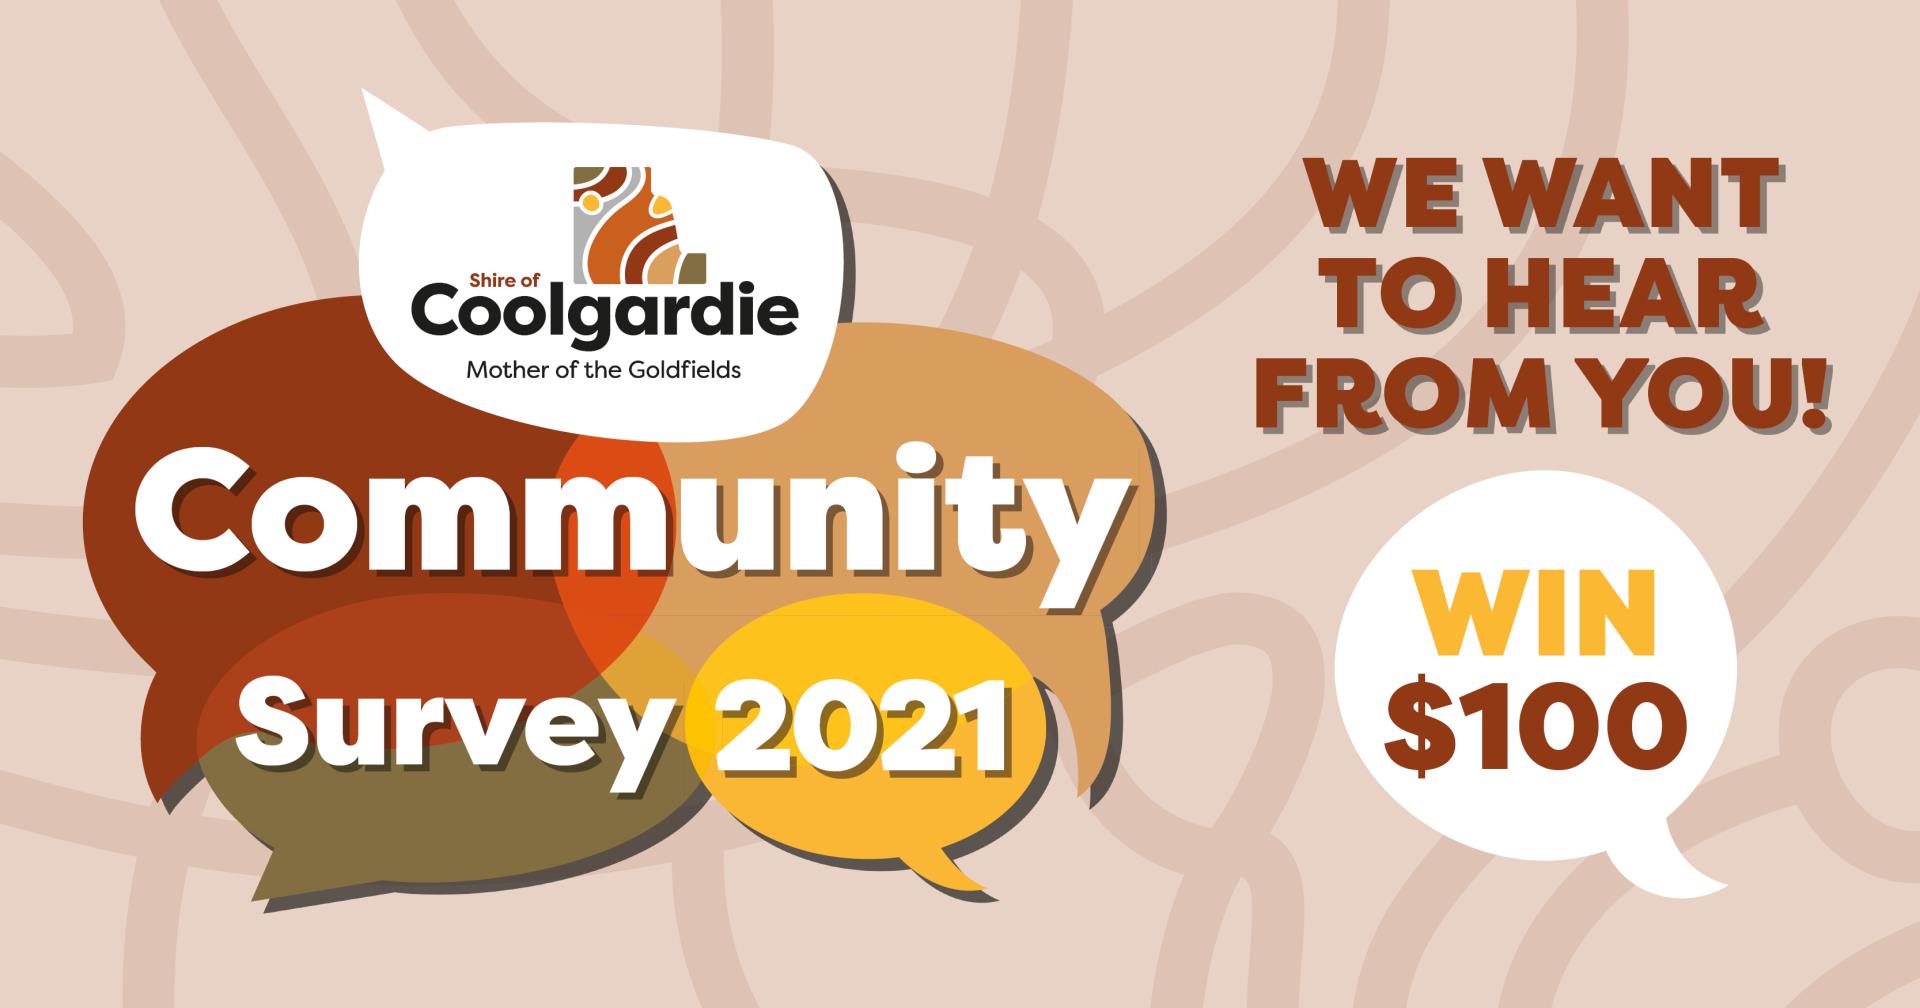 Coolgardie Community Survey 2021